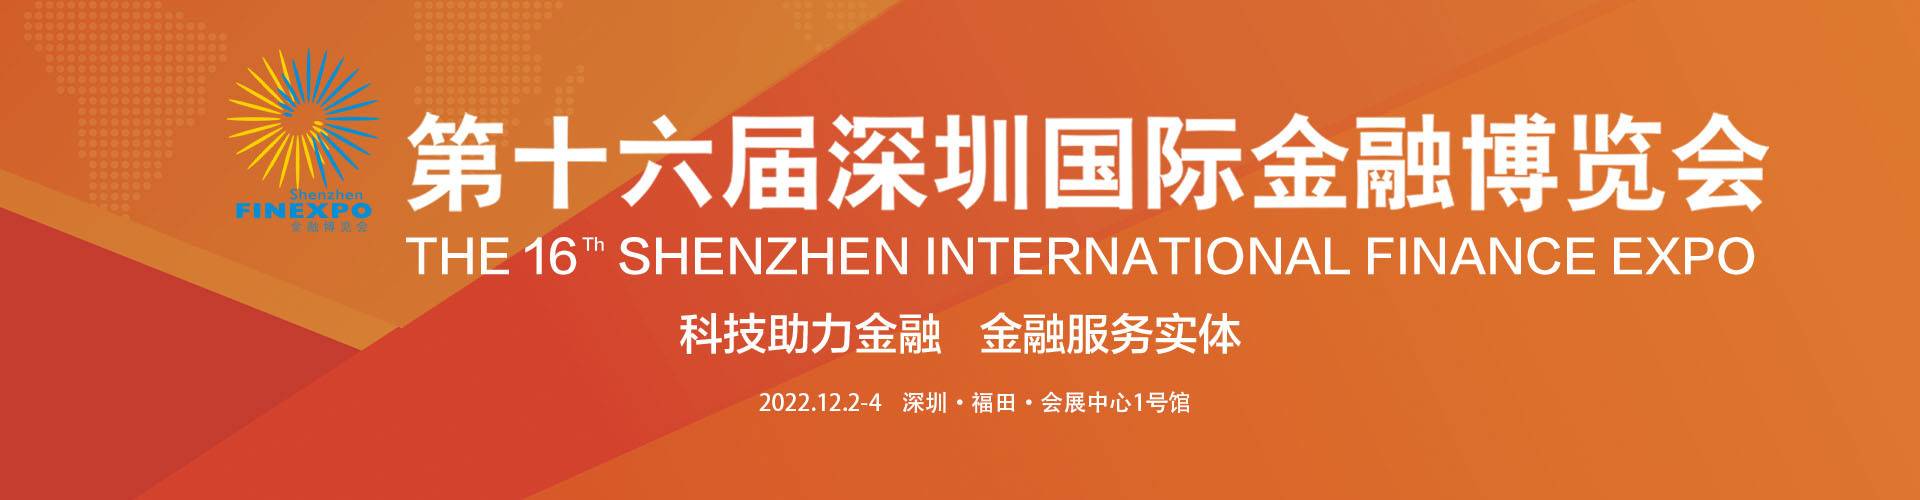 第十六屆深圳國際金融博覽會